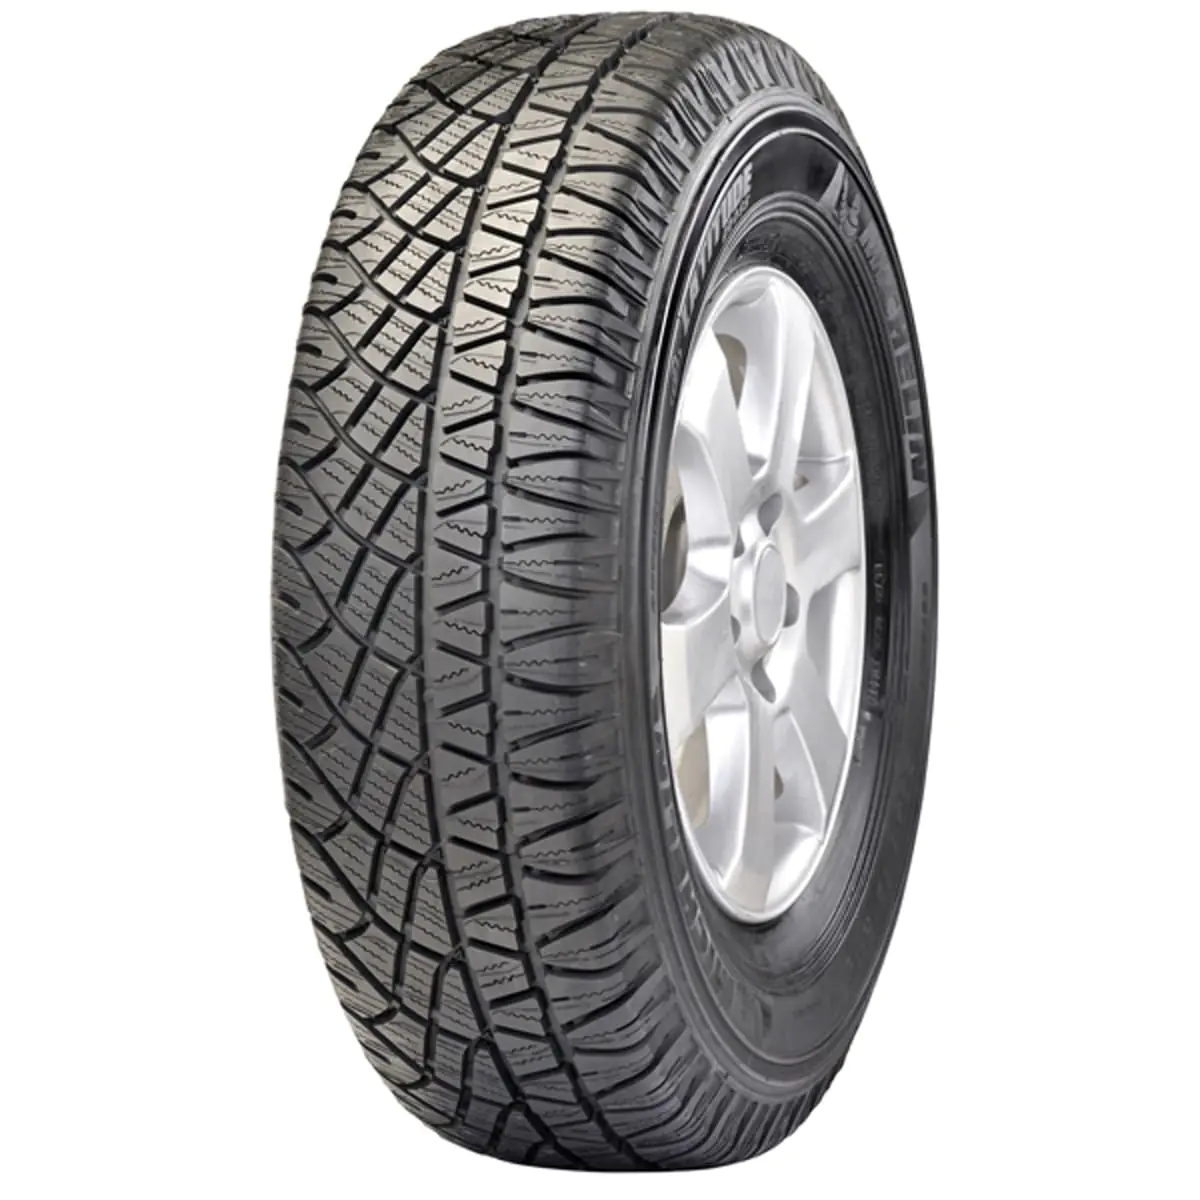 Michelin Michelin 225/75 R15 102T LATITUDE CROSS pneumatici nuovi Estivo 